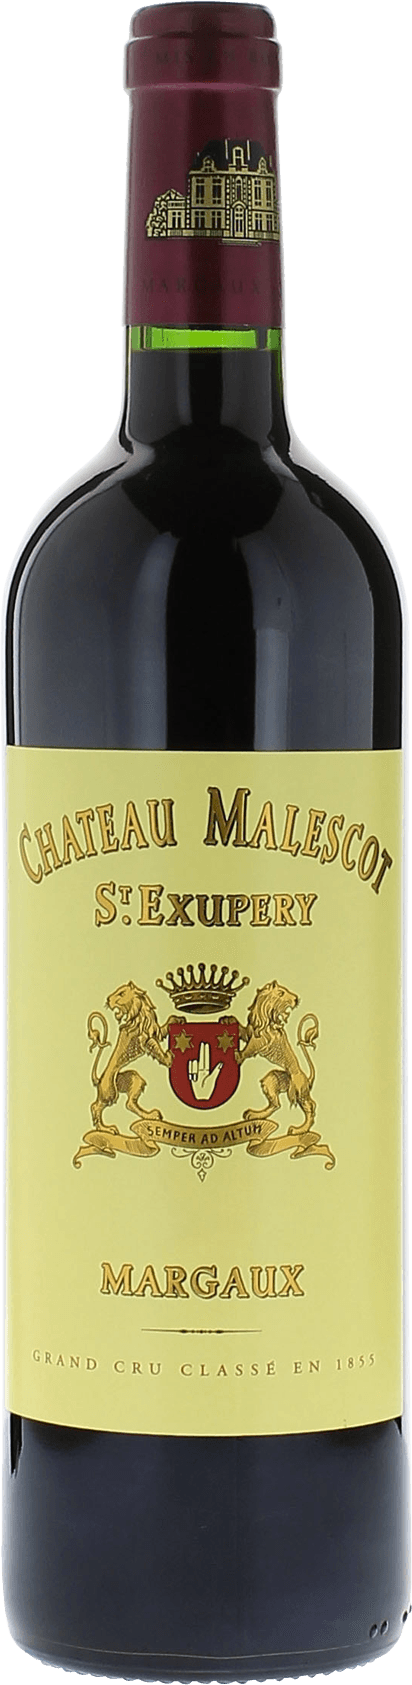 Malescot saint exupery 2020 3me Grand cru class Margaux, Bordeaux rouge